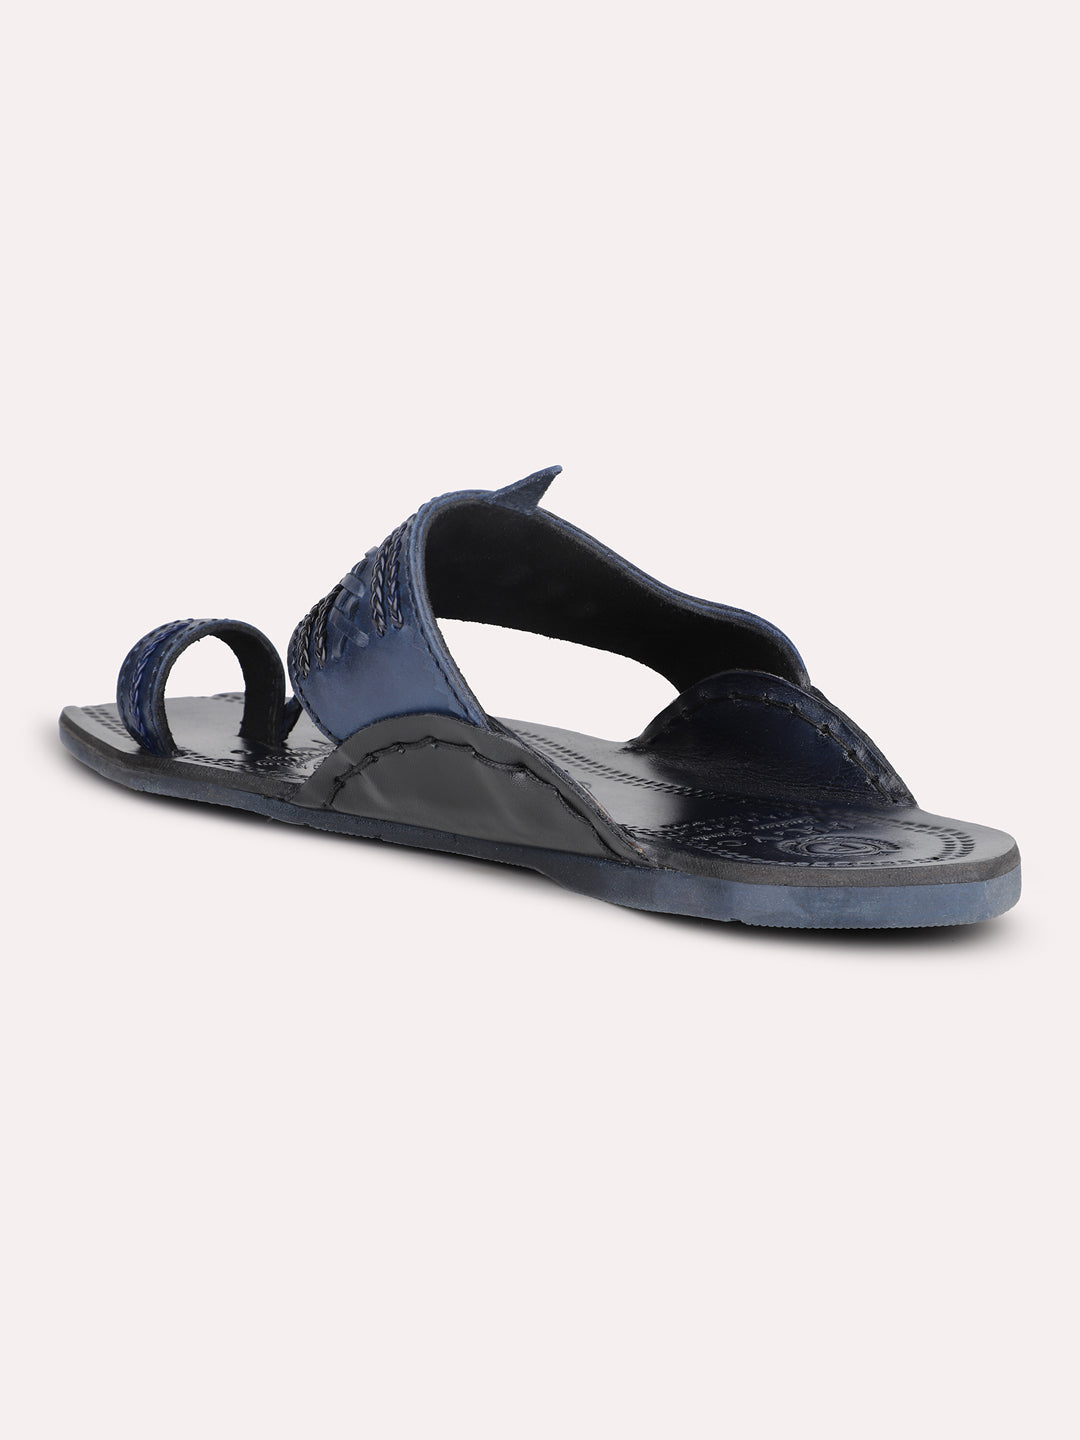 Privo Blue Kolhapuris Sandal for Men